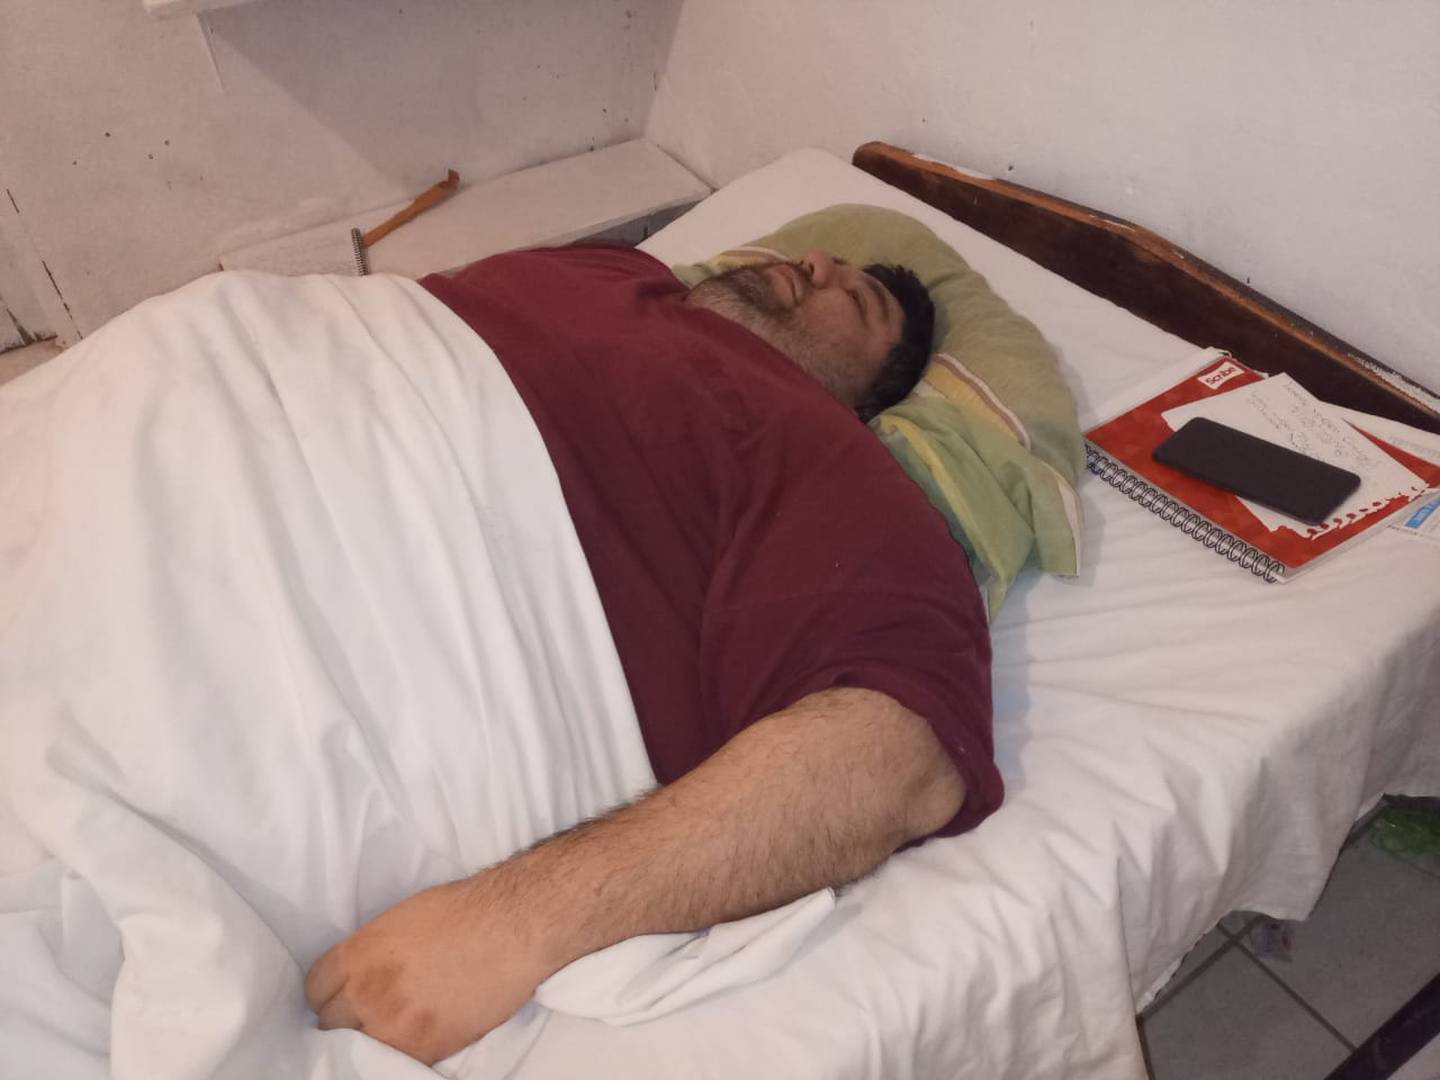 Los últimos tres años han sido muy difíciles para Jairo José Marín Mesén, ya que ha tenido que vivir “encarcelado” a su cama porque la obesidad mórbida que sufre ya no le permite ni levantarse